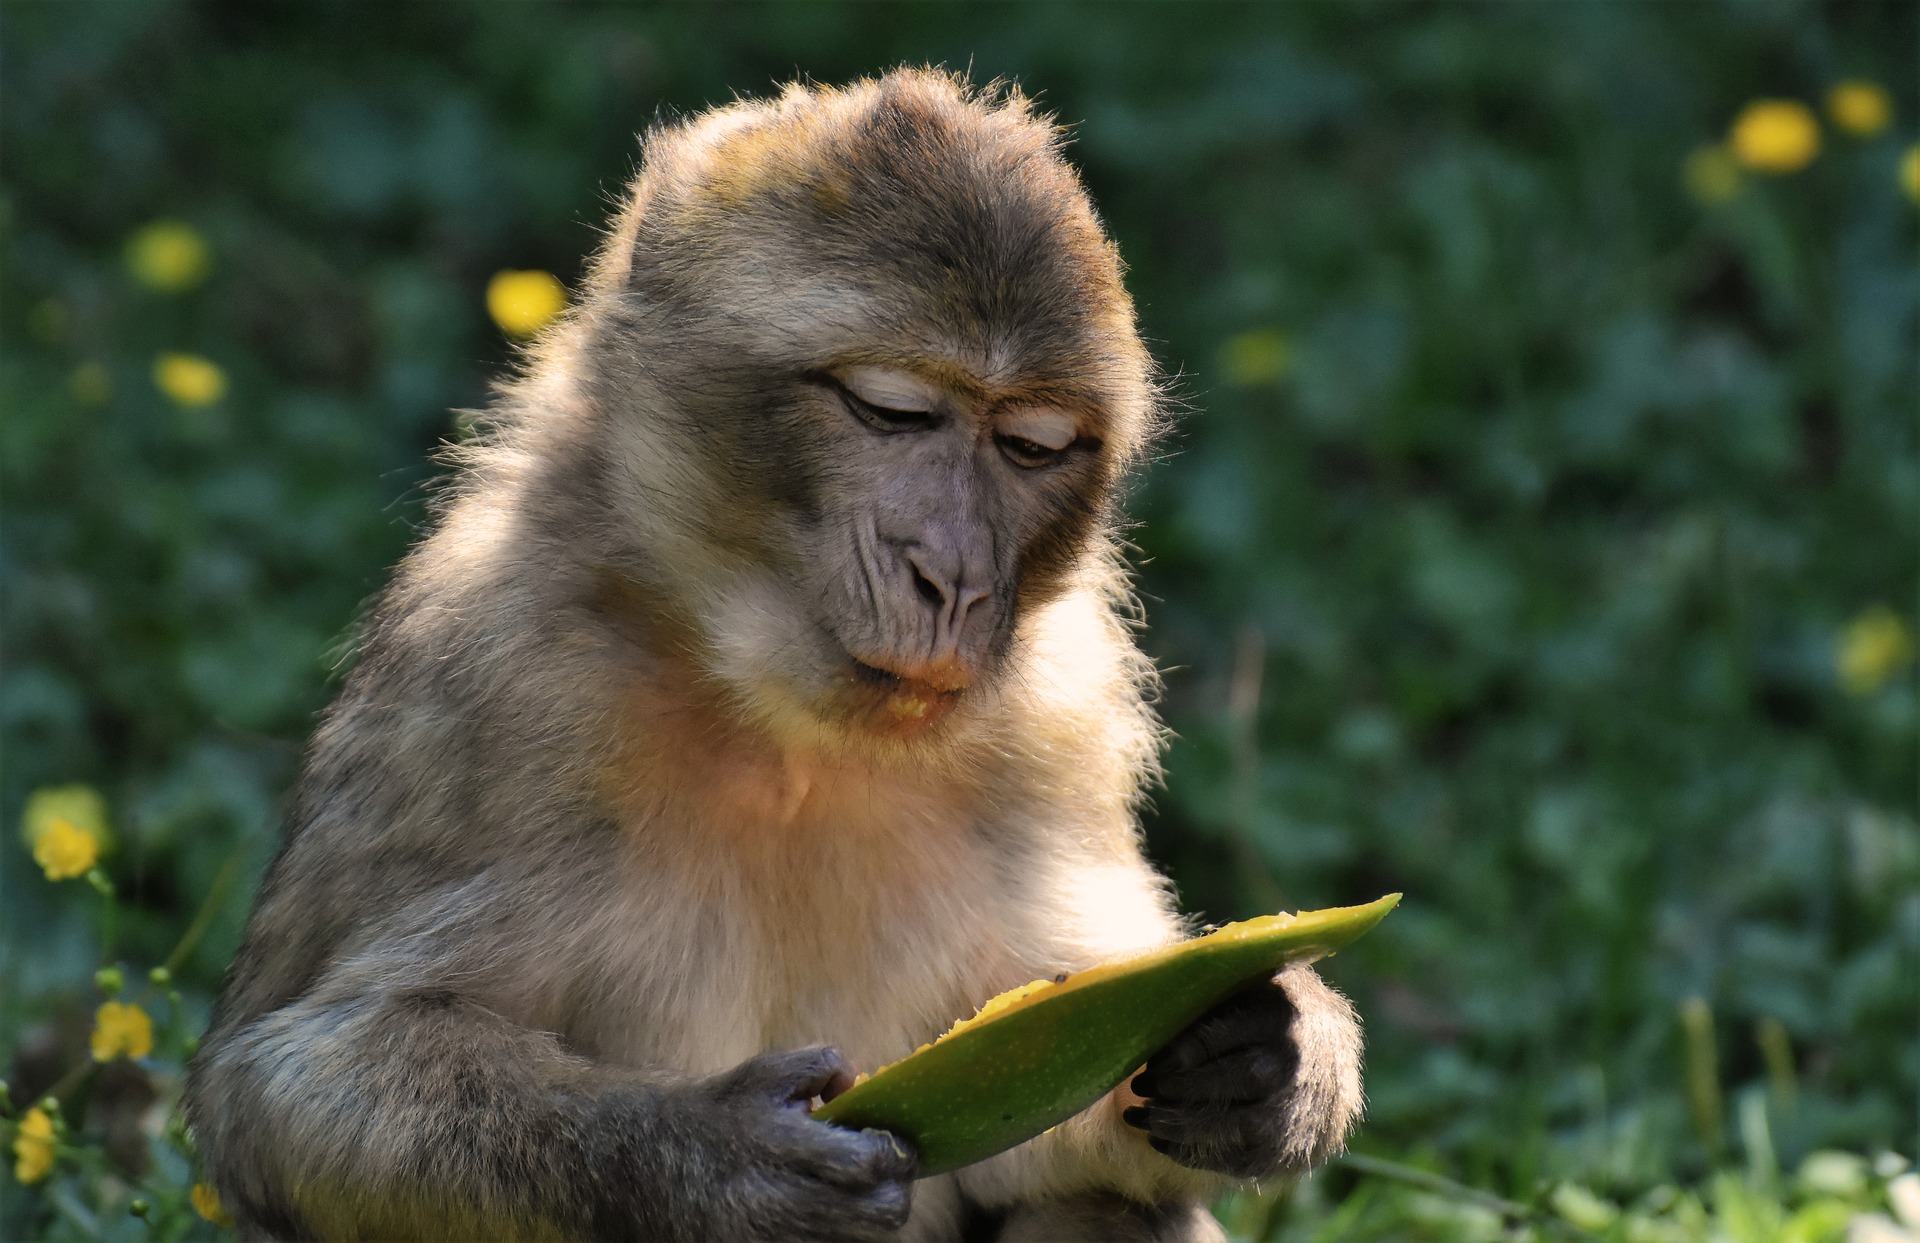 Những hình ảnh con khỉ đáng yêu sẽ khiến bạn trầm trồ bởi sự dễ thương cùng tính cách tinh nghịch của chúng. Hãy thưởng thức và cười nhiệt tình với những bức ảnh này.